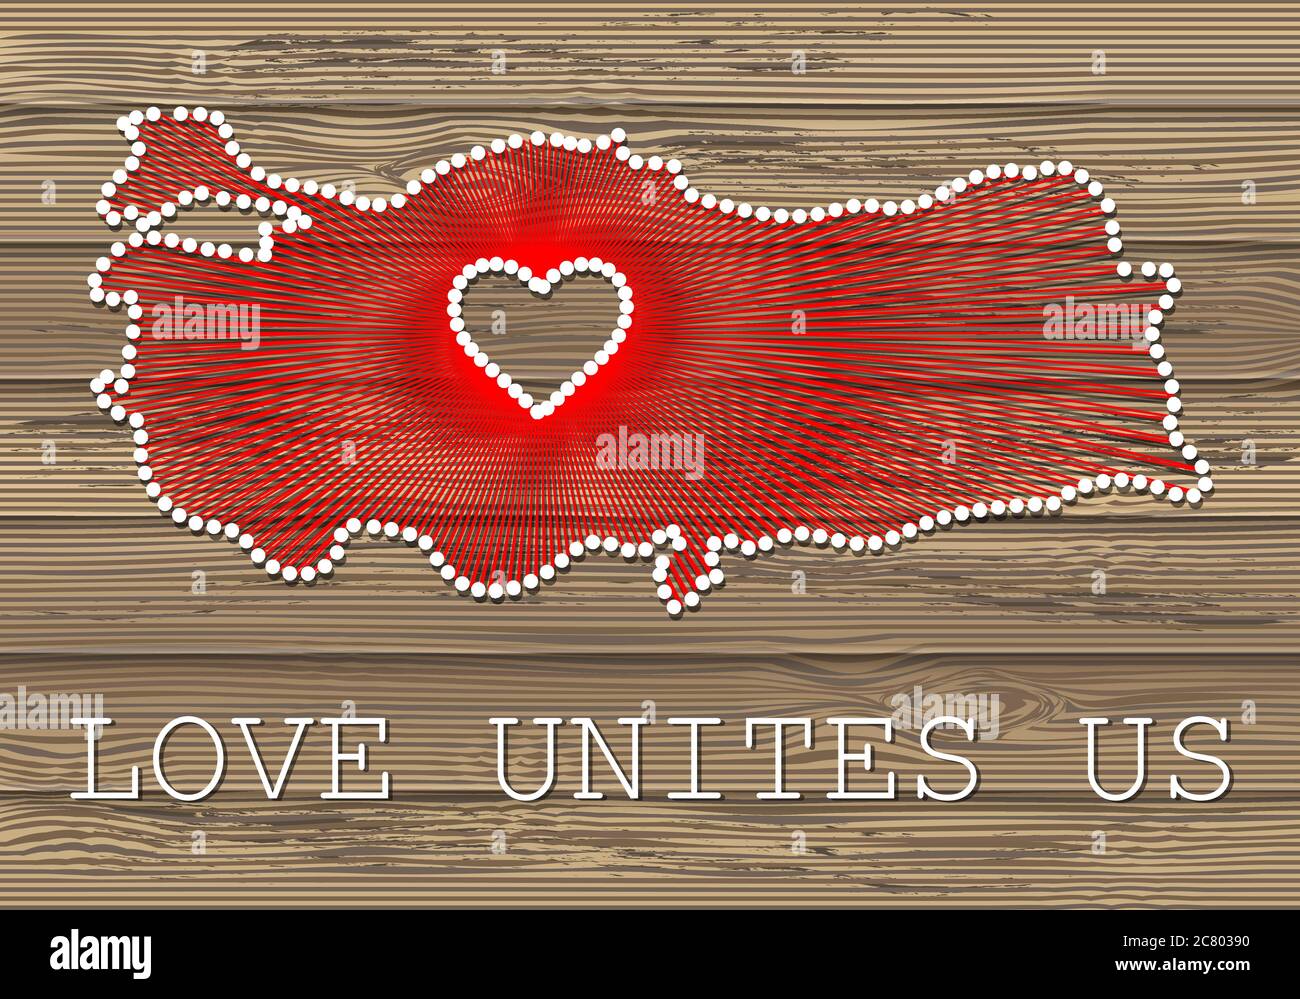 Türkei Kunst Vektor-Karte mit Herz. Fadenkunst, Garn und Stifte auf Holzplanken Textur. Liebe verbindet uns. Botschaft der Liebe. Türkei Kunstkarte Stock Vektor